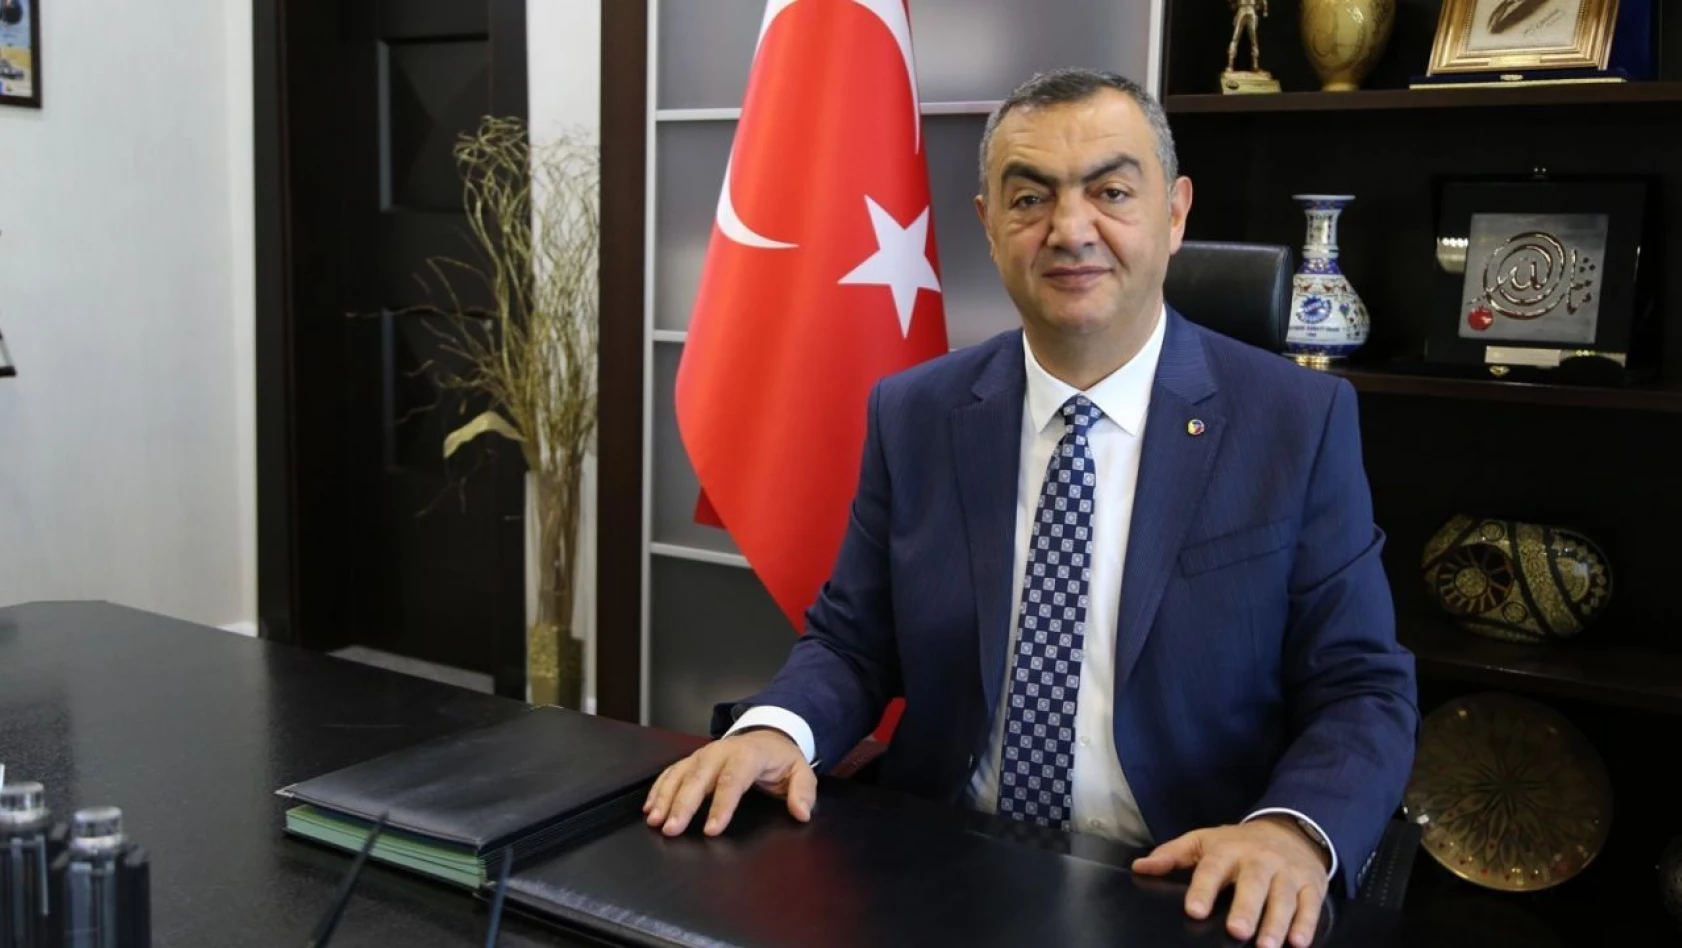 Büyüksimitci: 'Hulusi Paşa'nın Kayseri'ye yaptırdığı 50 yıllık icraat var'